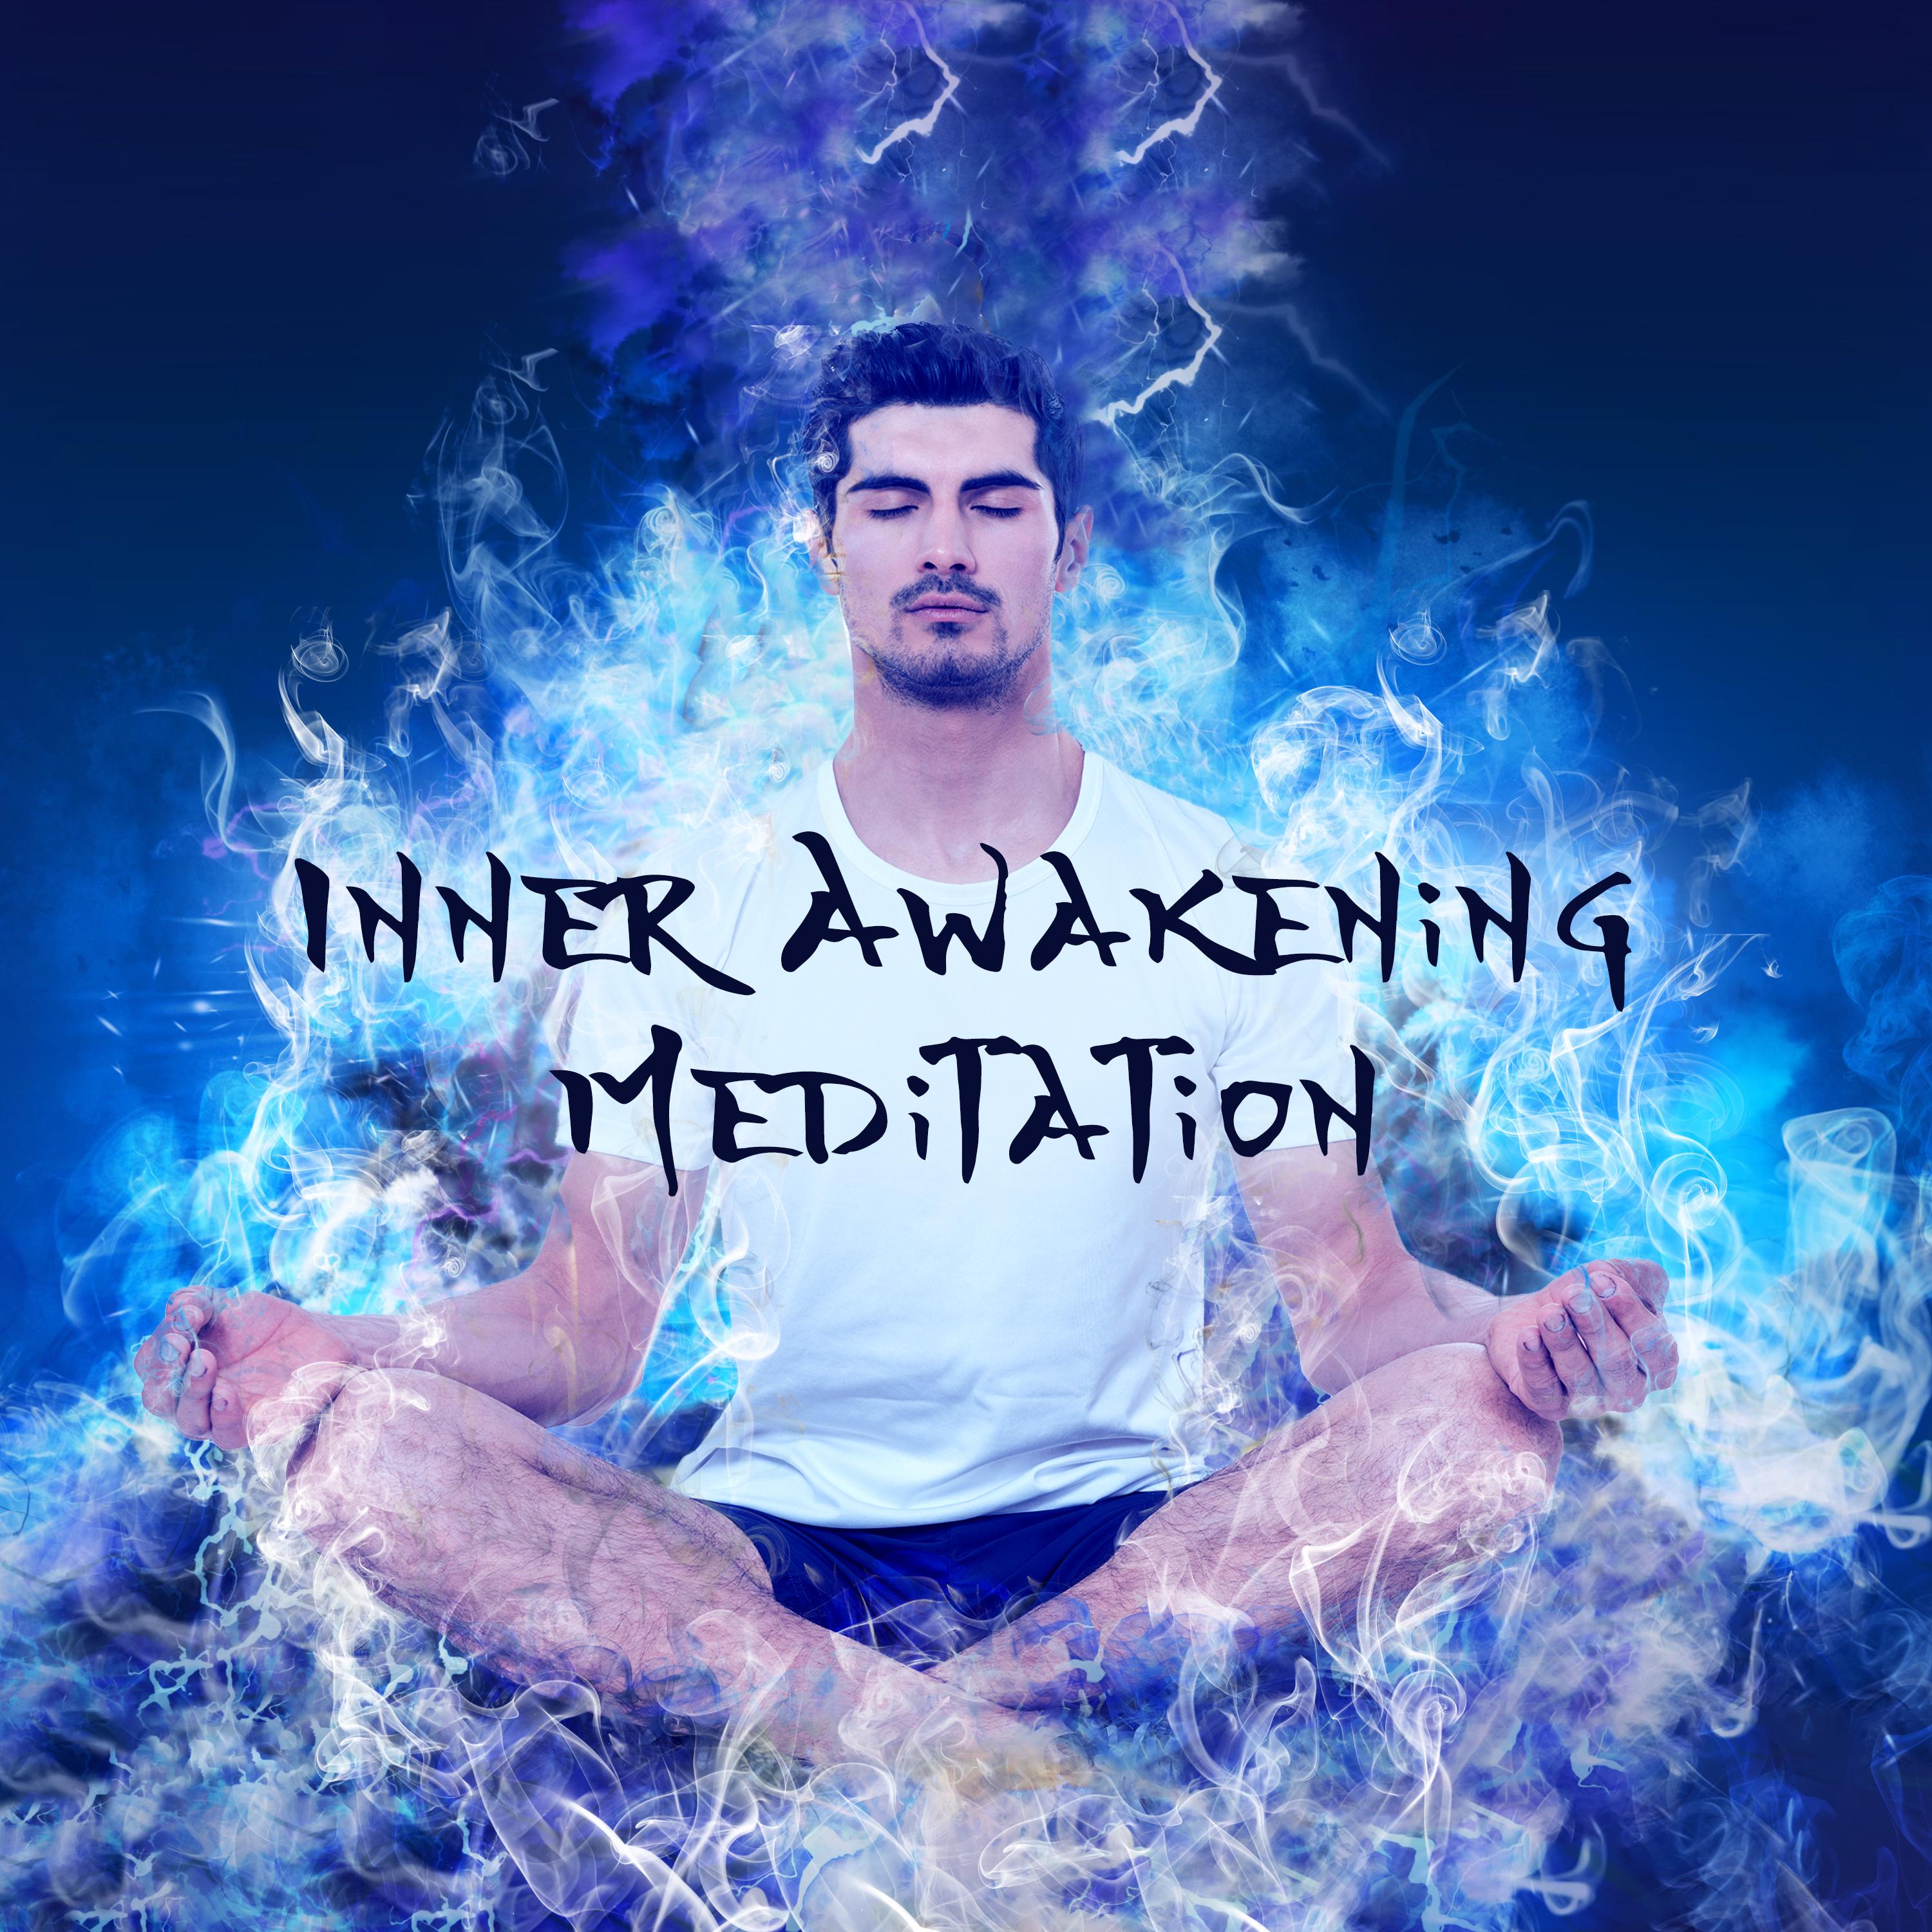 Inner Awakening Meditation